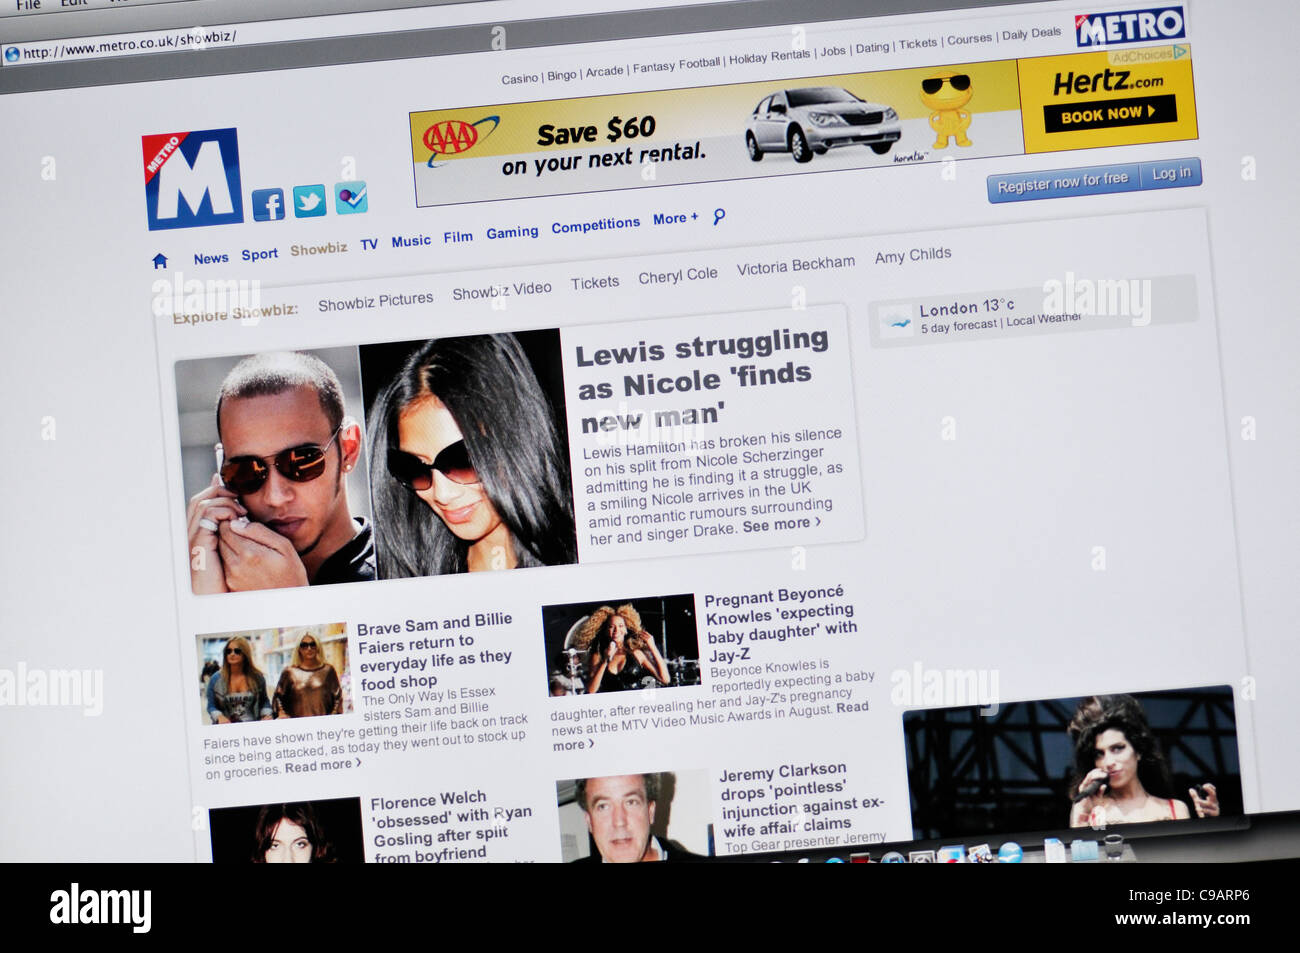 Metro celebrity news website Stock Photo